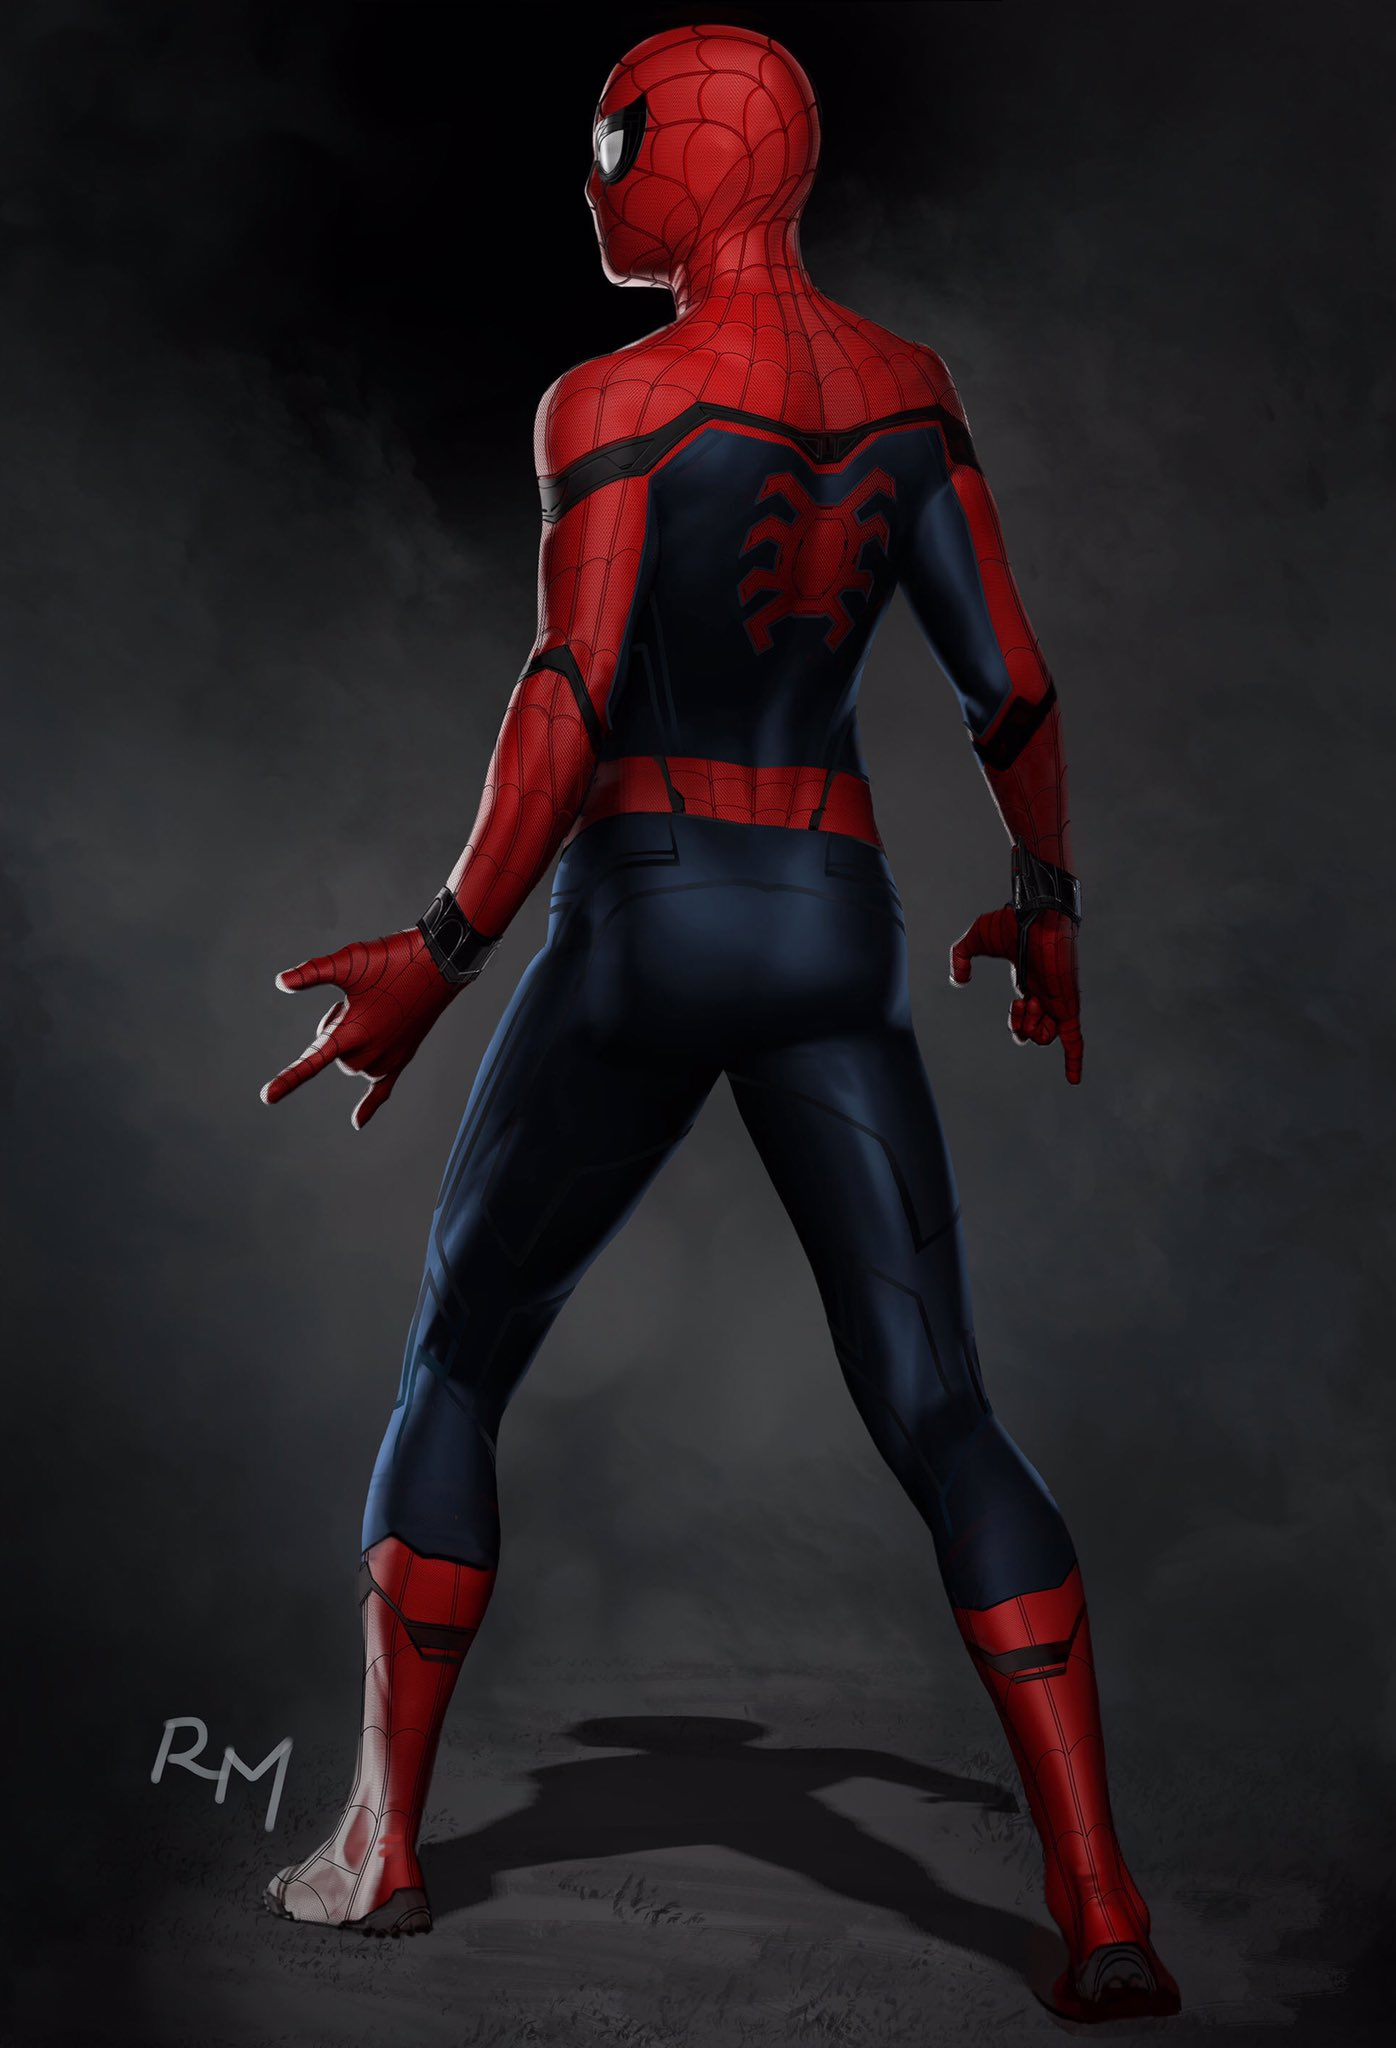 Image - SMH Spider-Man suit concept (rear).png | Disney ...